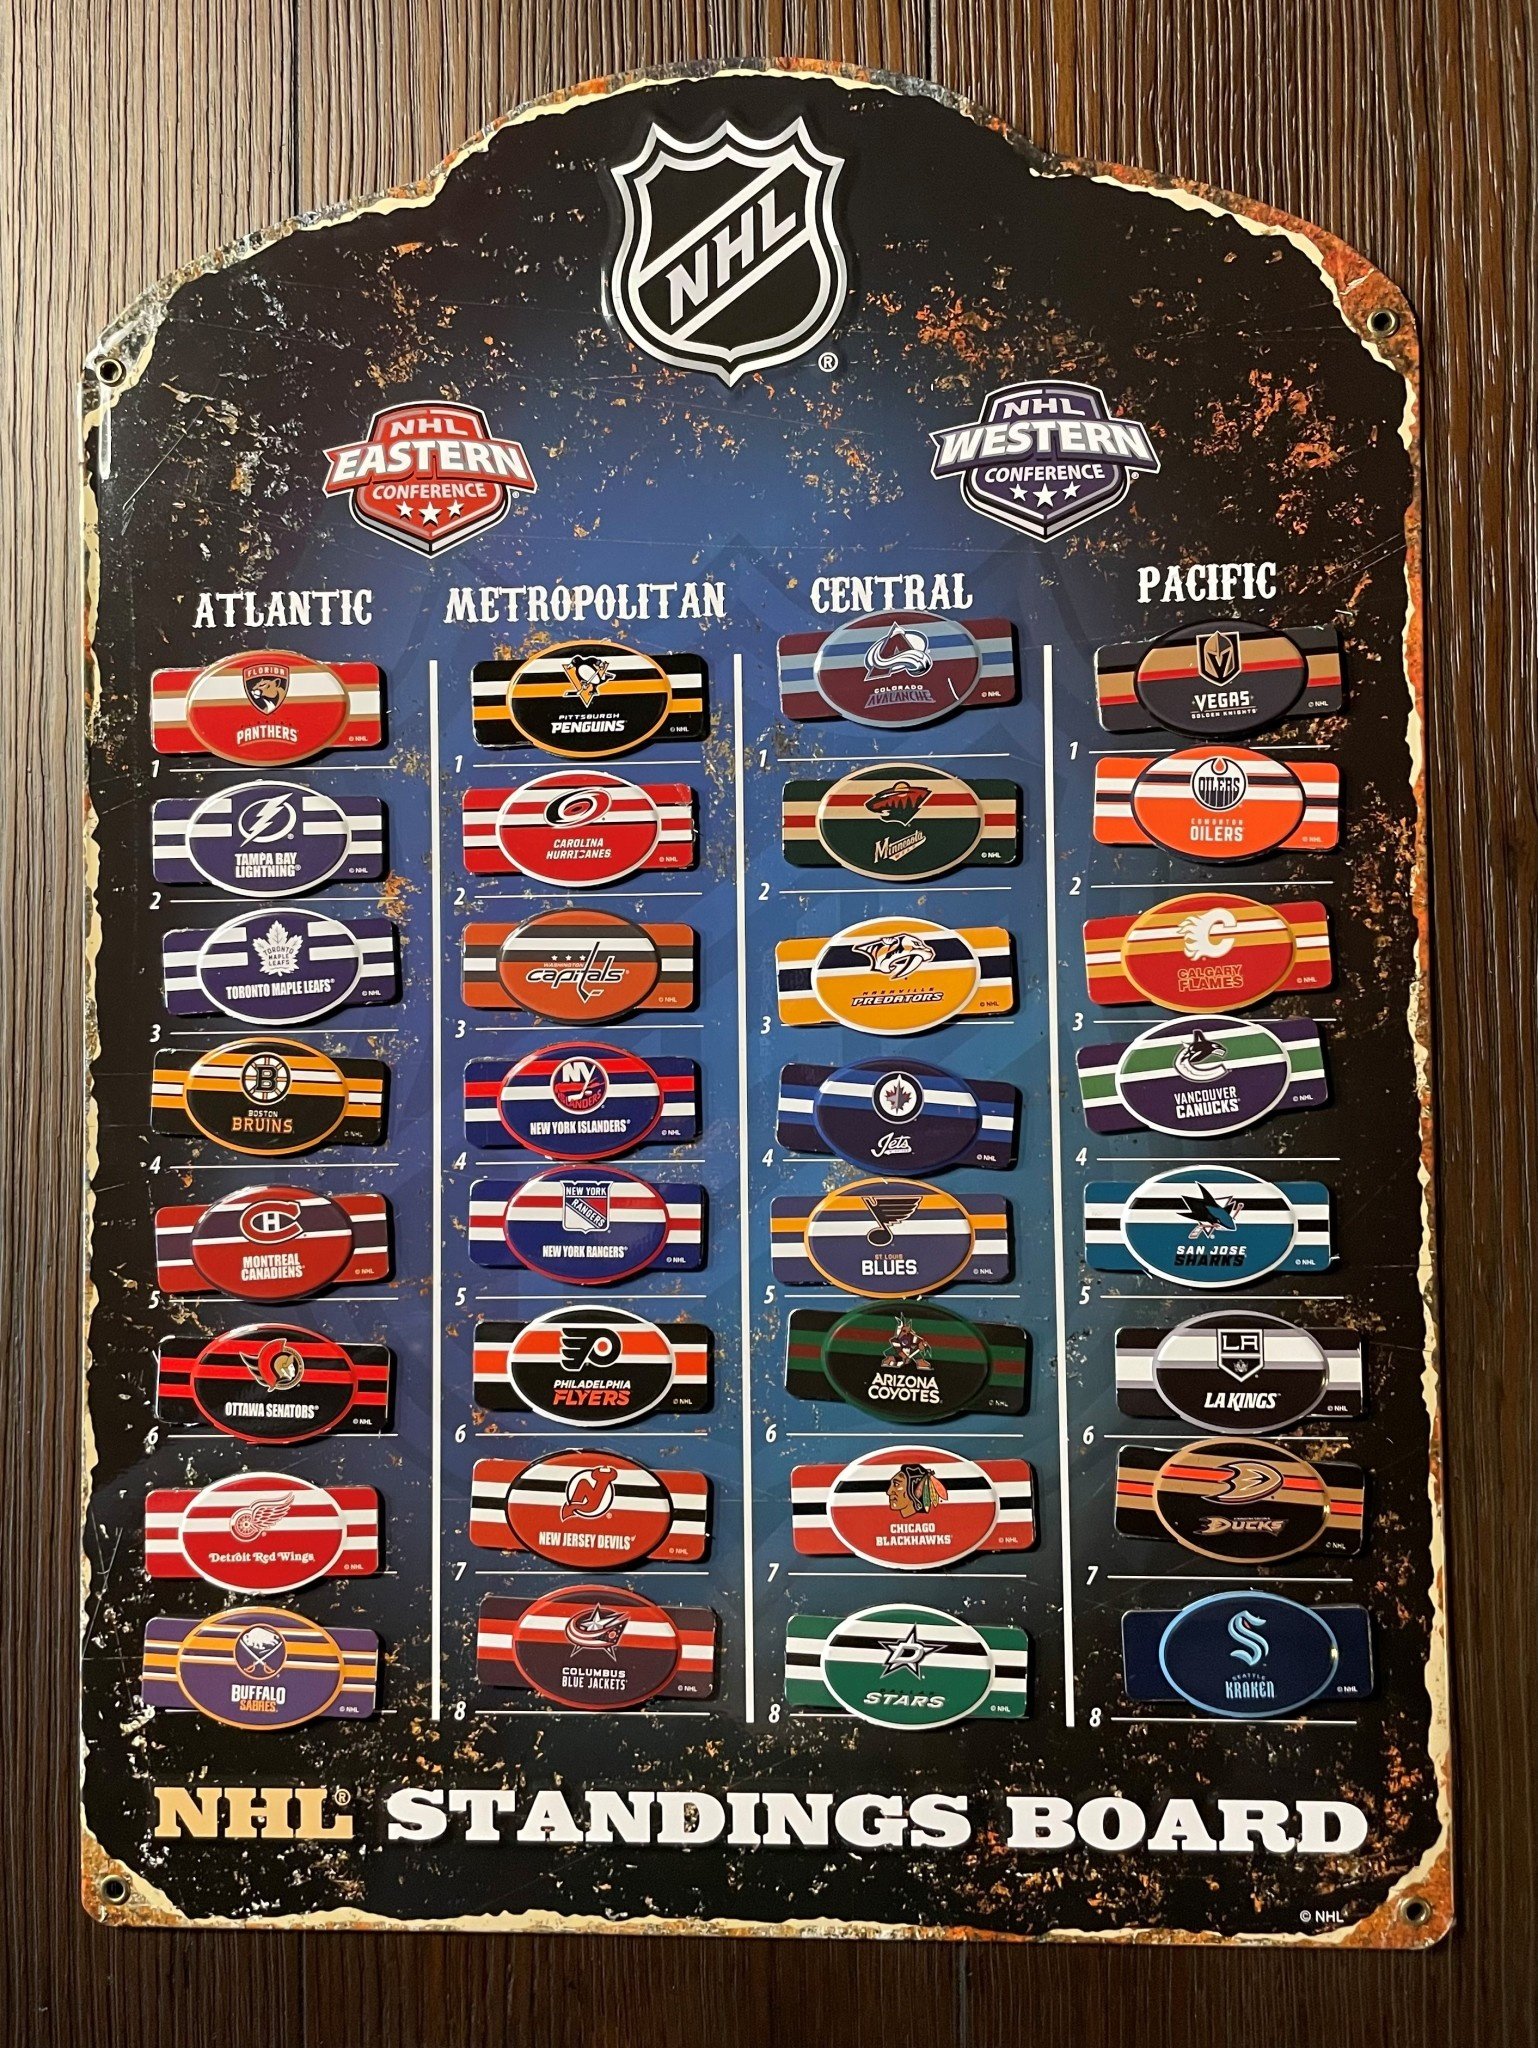 NHL Standings Board  Nhl standings, Sports cards display, Nhl